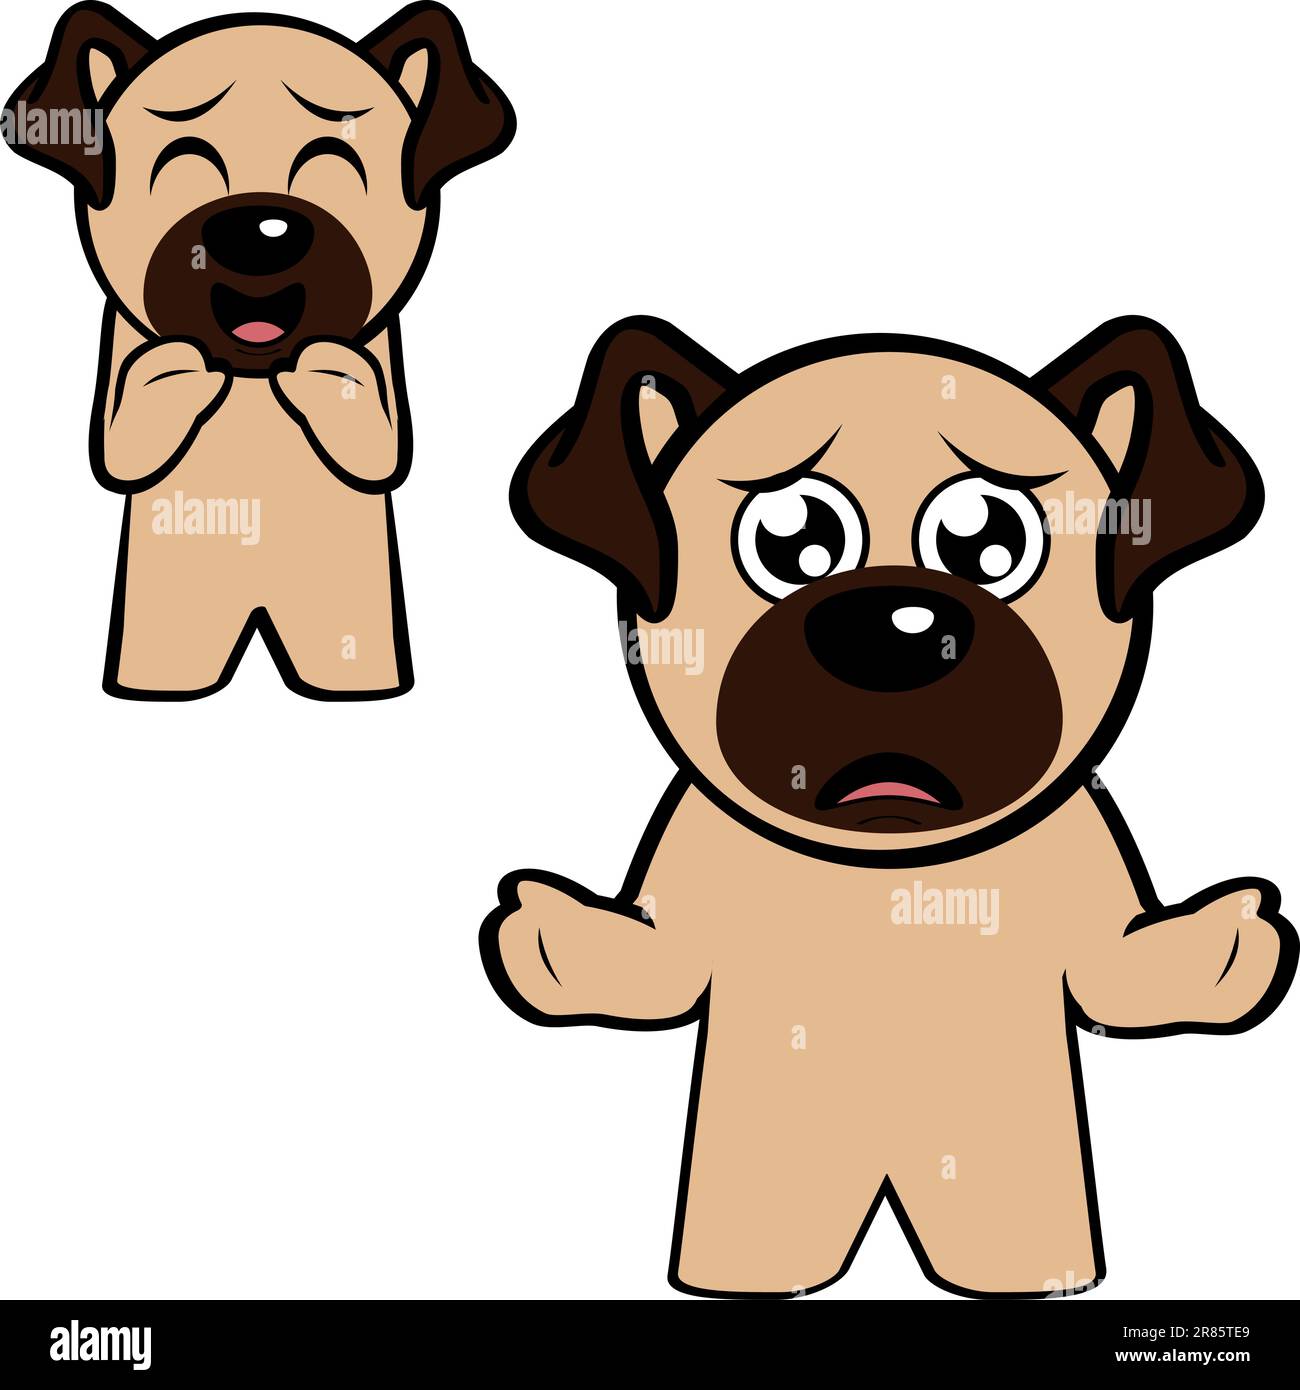 Scared Cartoon Dog Face Expression Vector Stock Vector